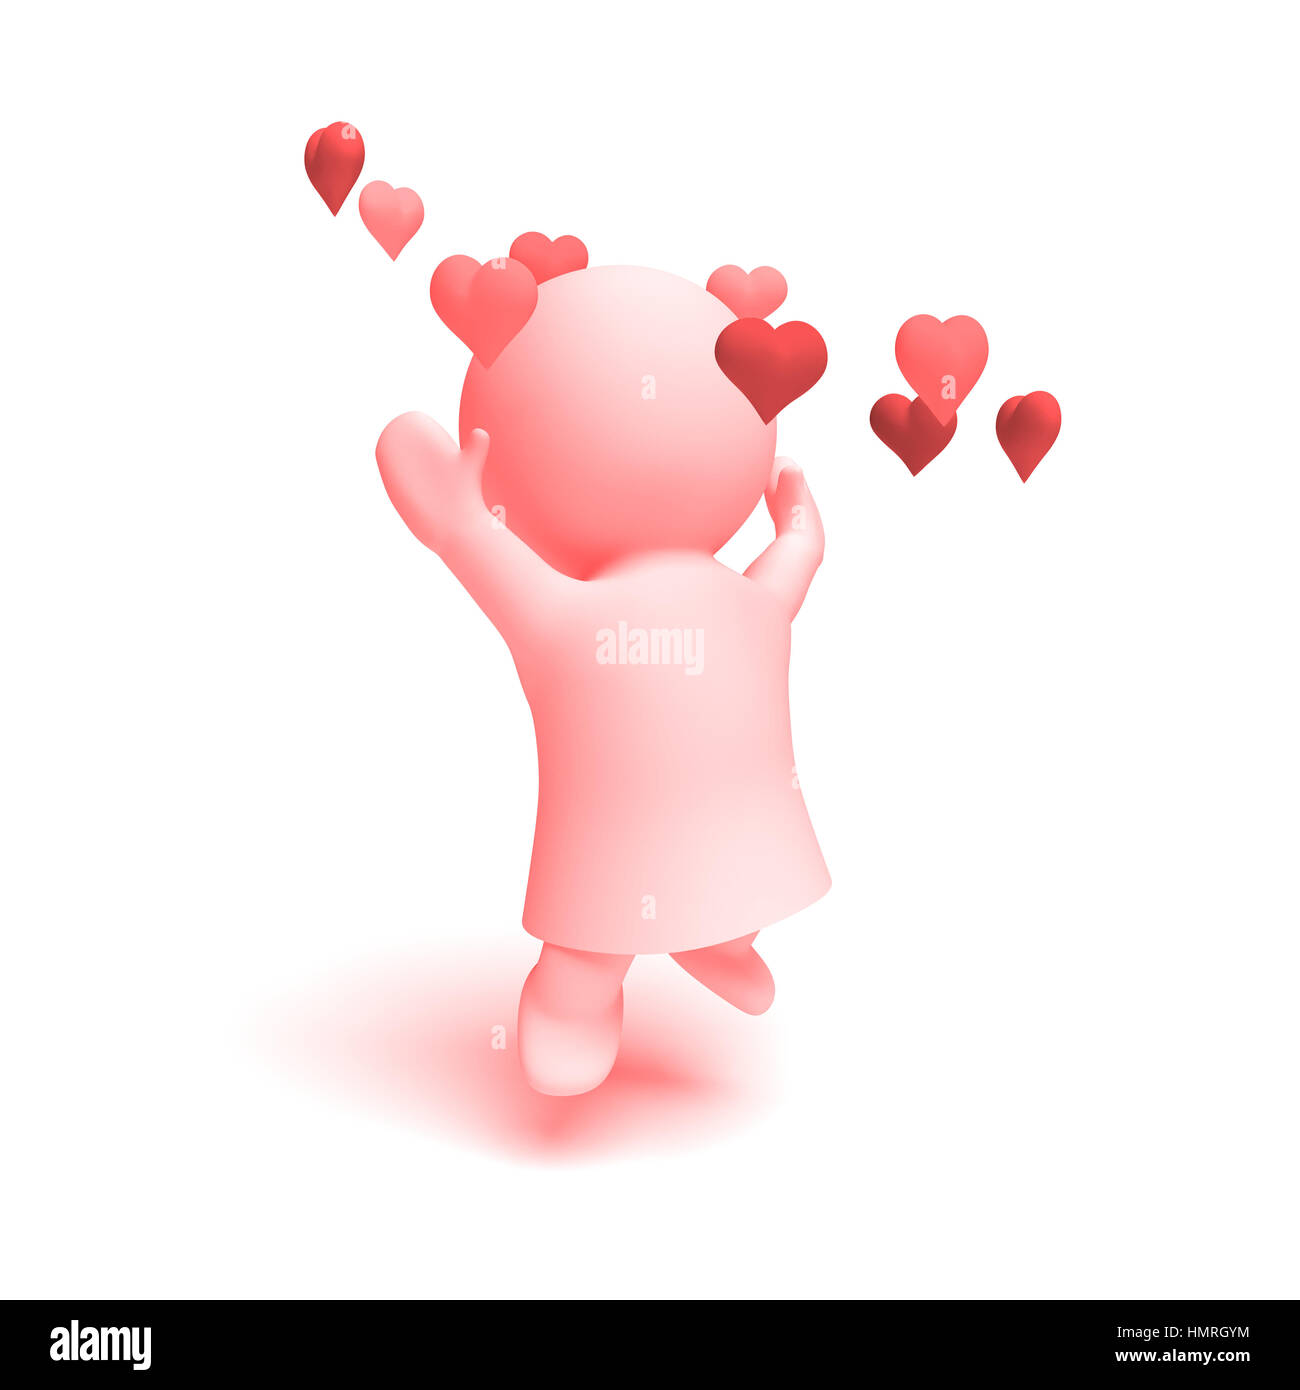 Les droits de l'adorable personnage 3D dans des tons de rose porte une robe cheering heureux dans un anneau de coeur (3D illustration isolé sur fond blanc) Banque D'Images